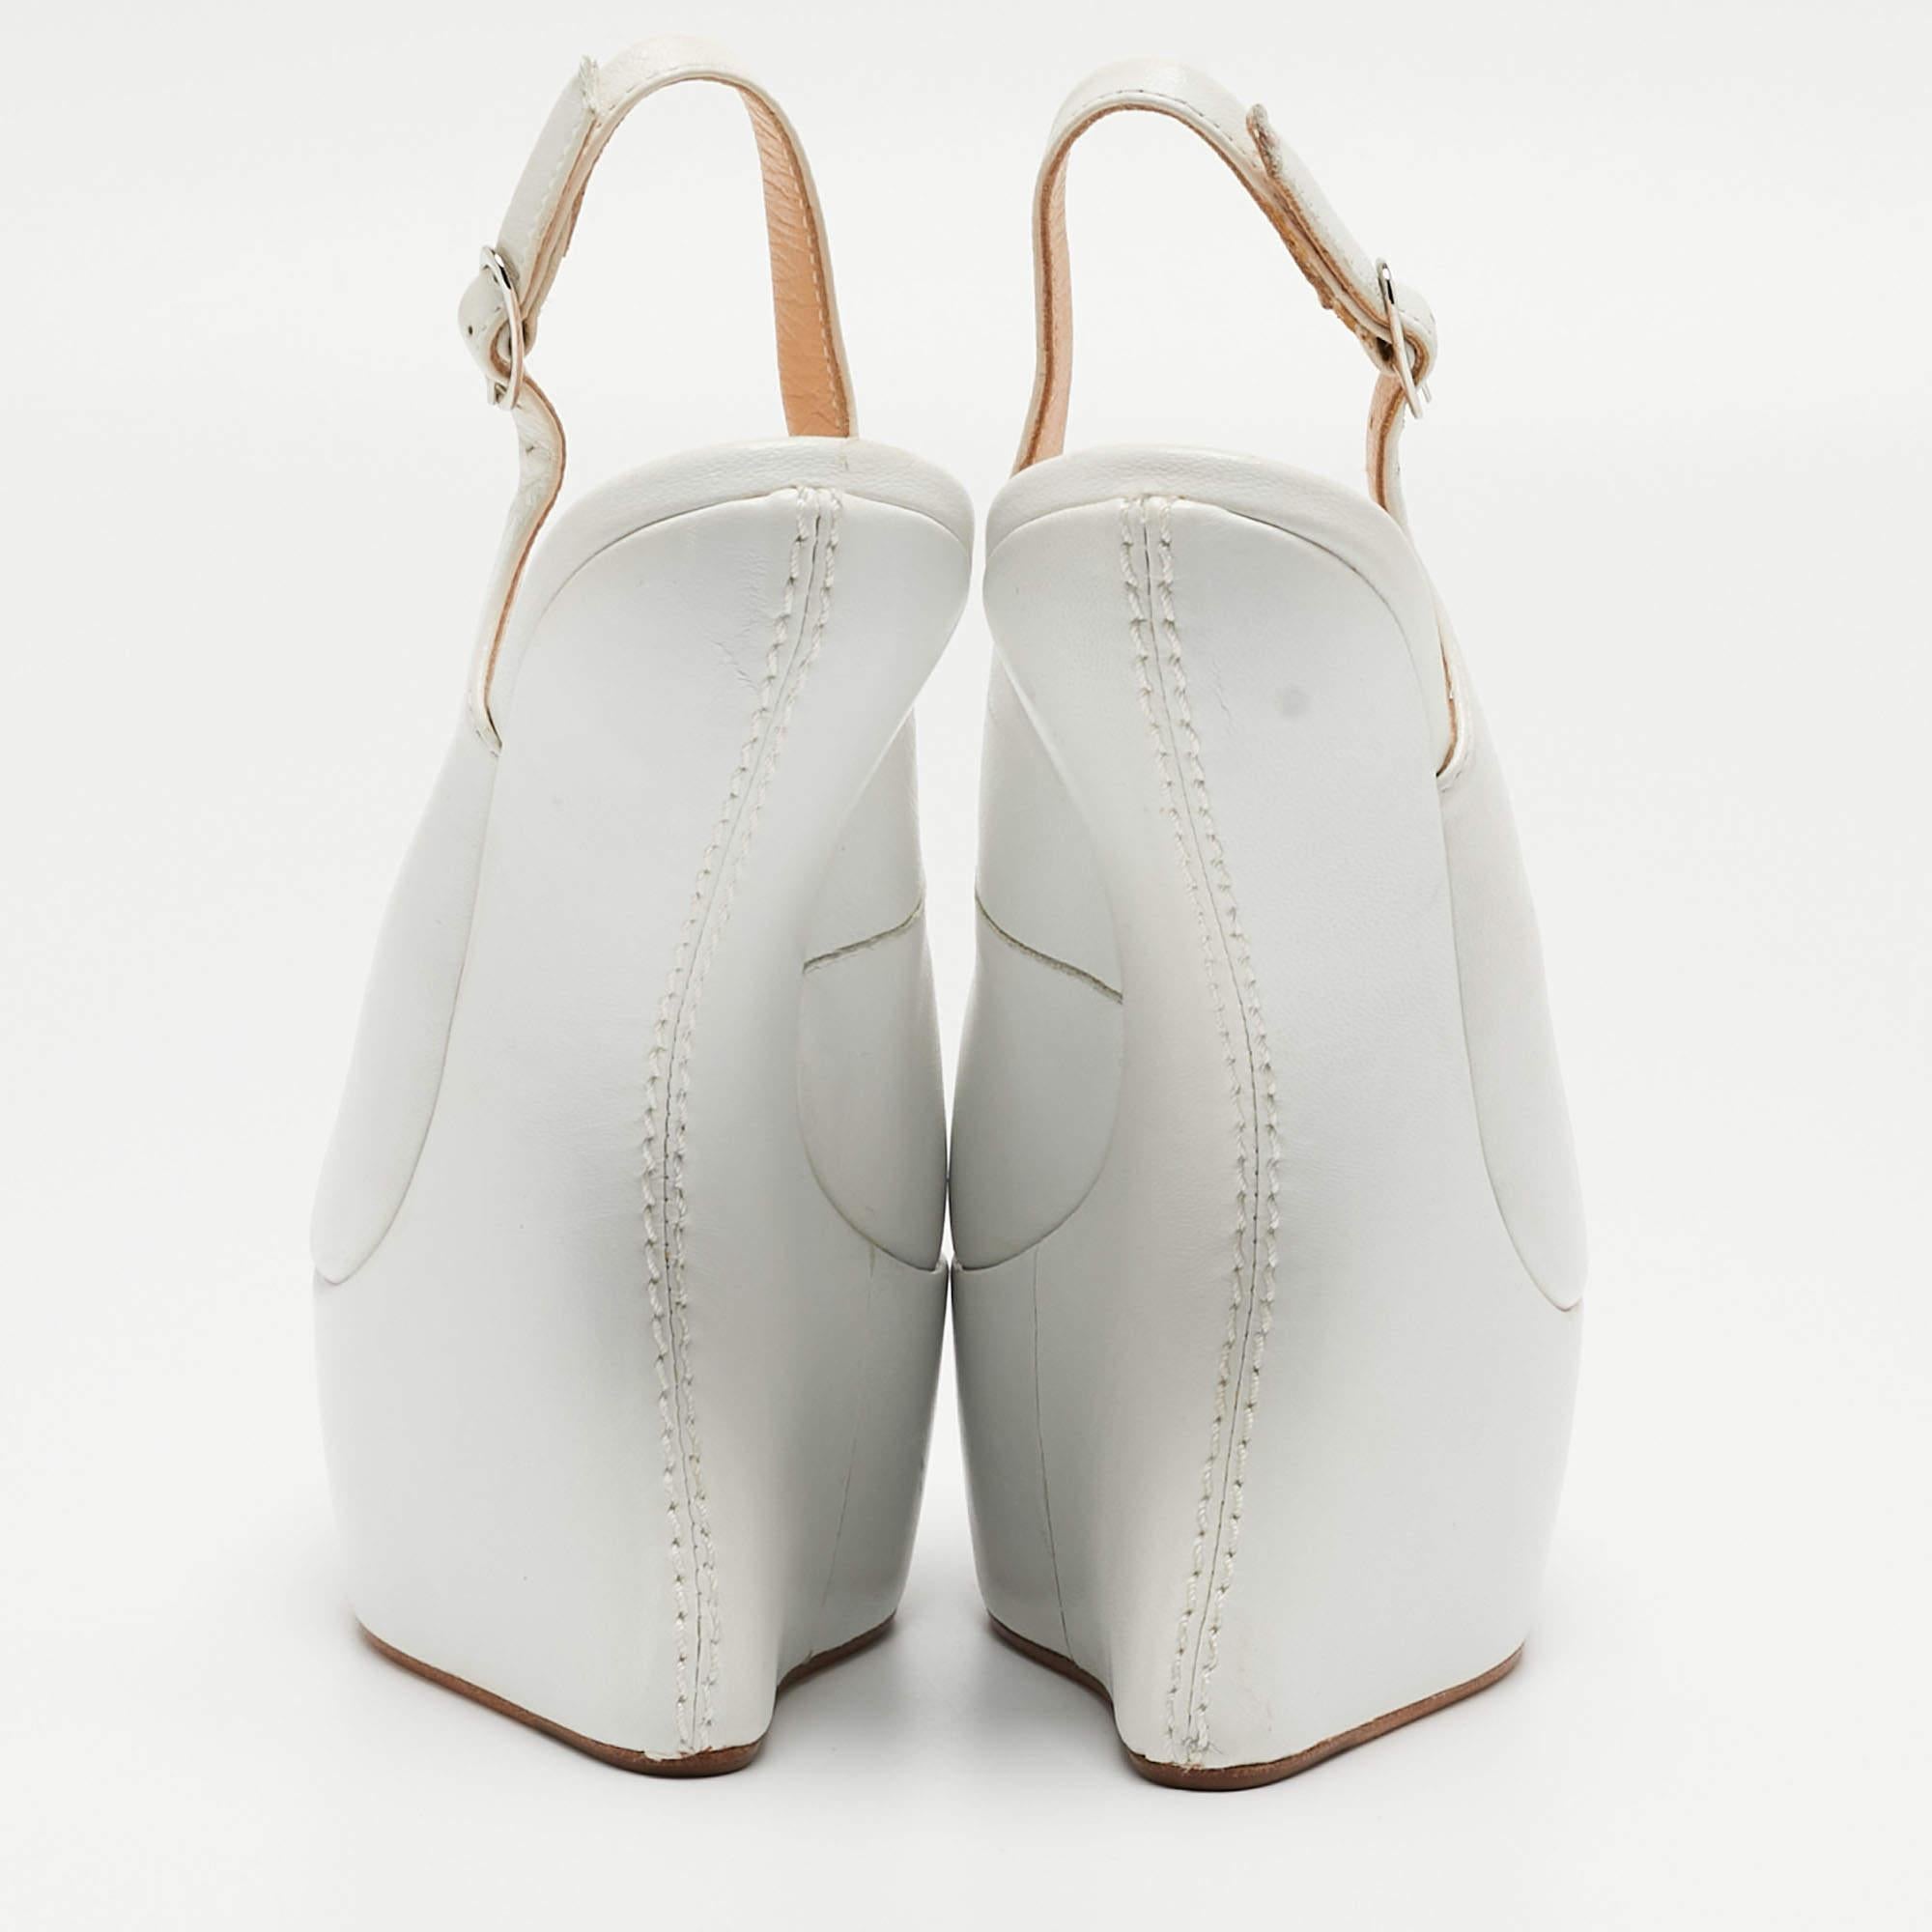 Entdecken Sie den Inbegriff von Eleganz mit diesen Damenpumps von Zanotti. Diese sorgfältig entworfenen Schuhe vereinen Mode und Komfort und sorgen dafür, dass Sie in jeder Umgebung glänzen.

